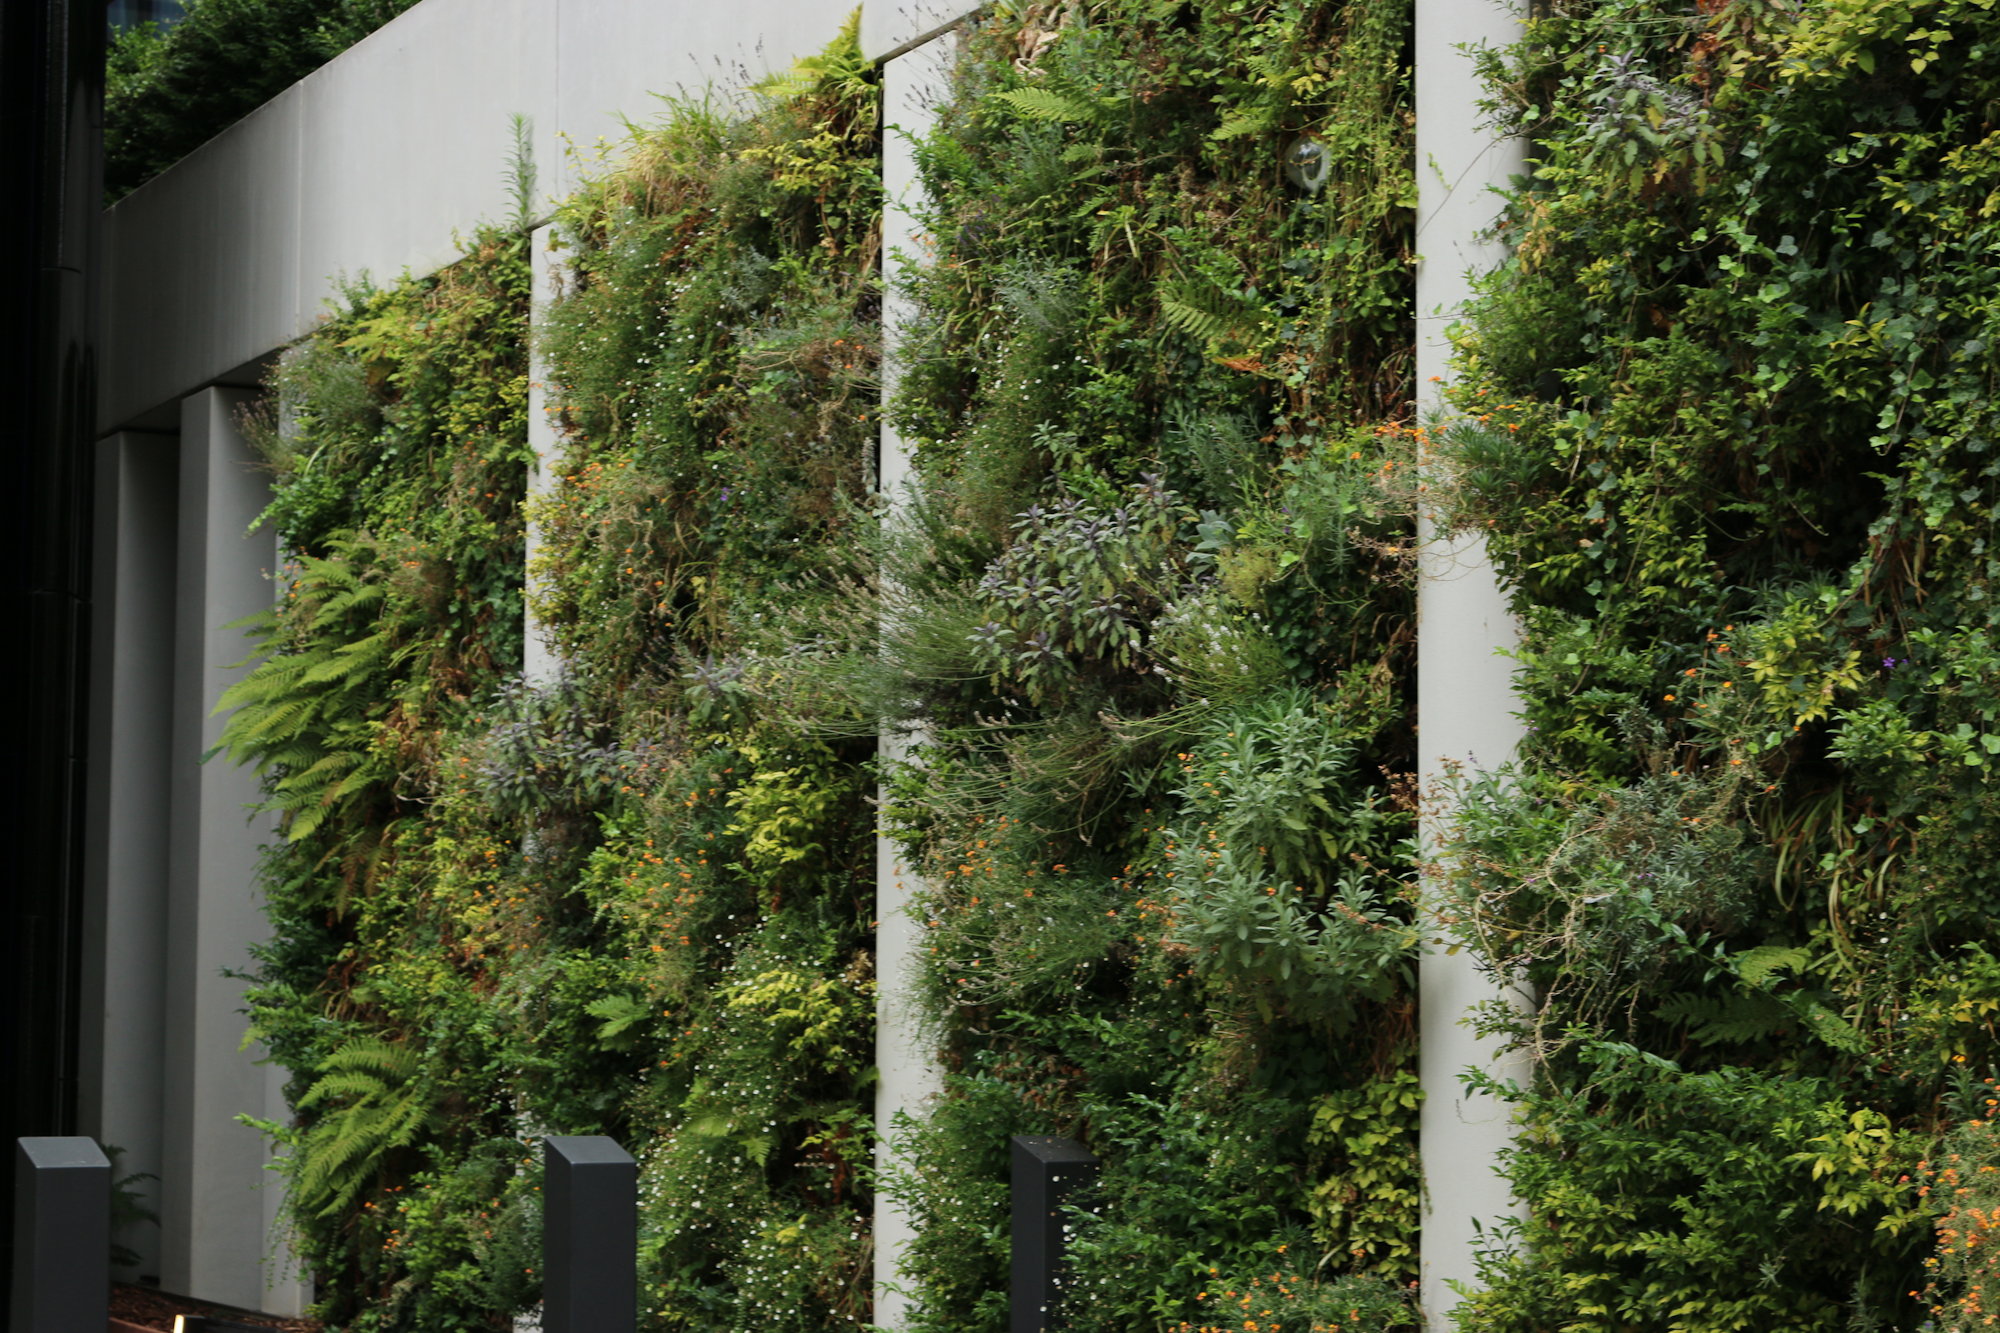 verdant lush living wall against a white facade